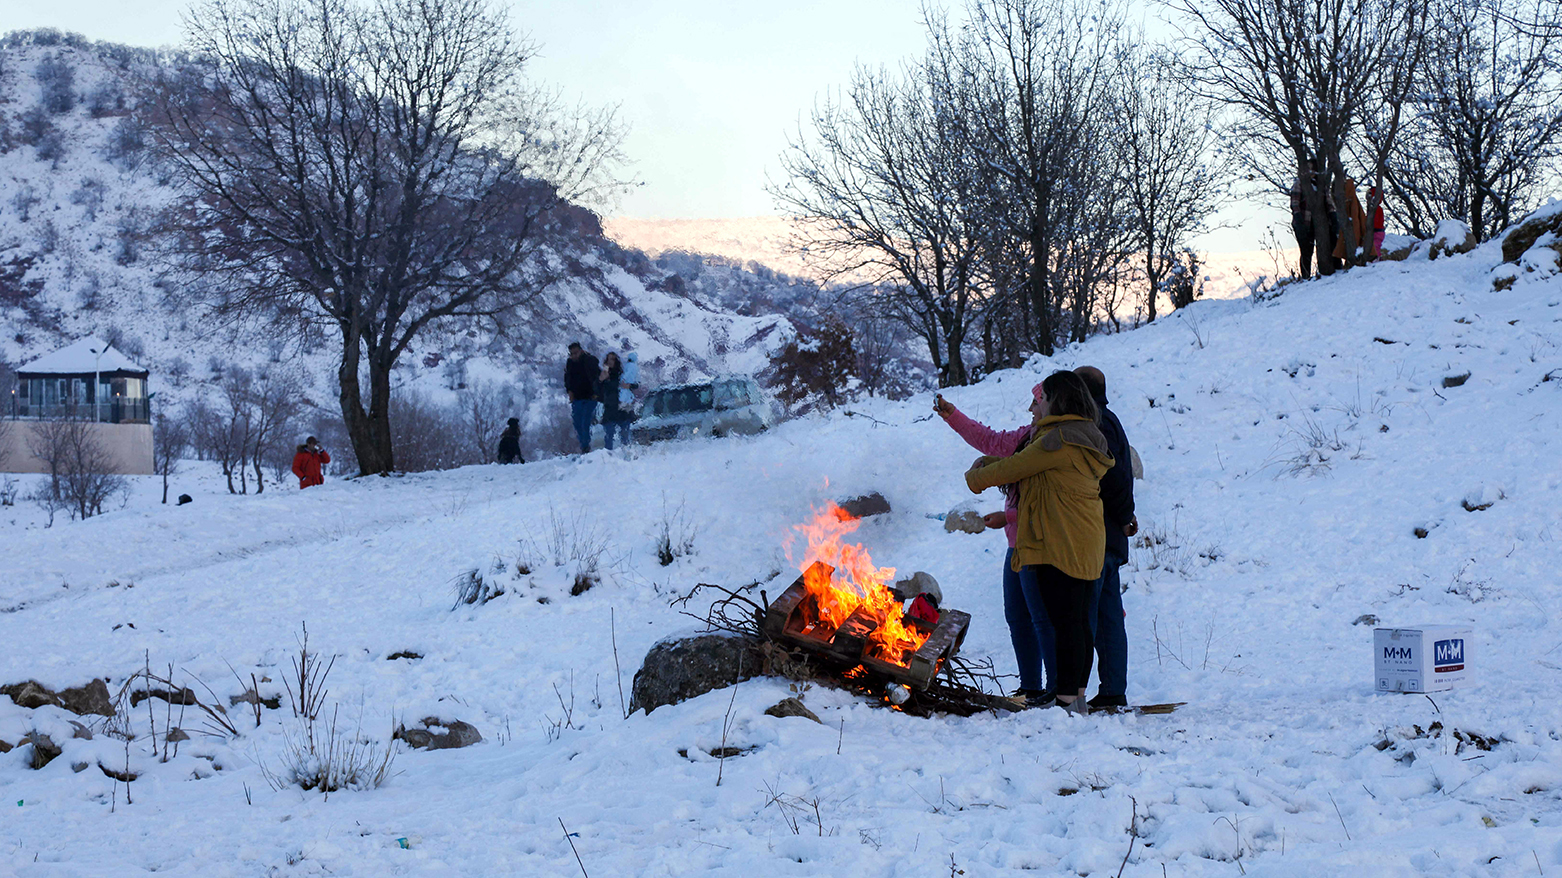 برف اربیل را سفیدپوش کرد و به گردشگری زمستانی رونقی تازه بخشید